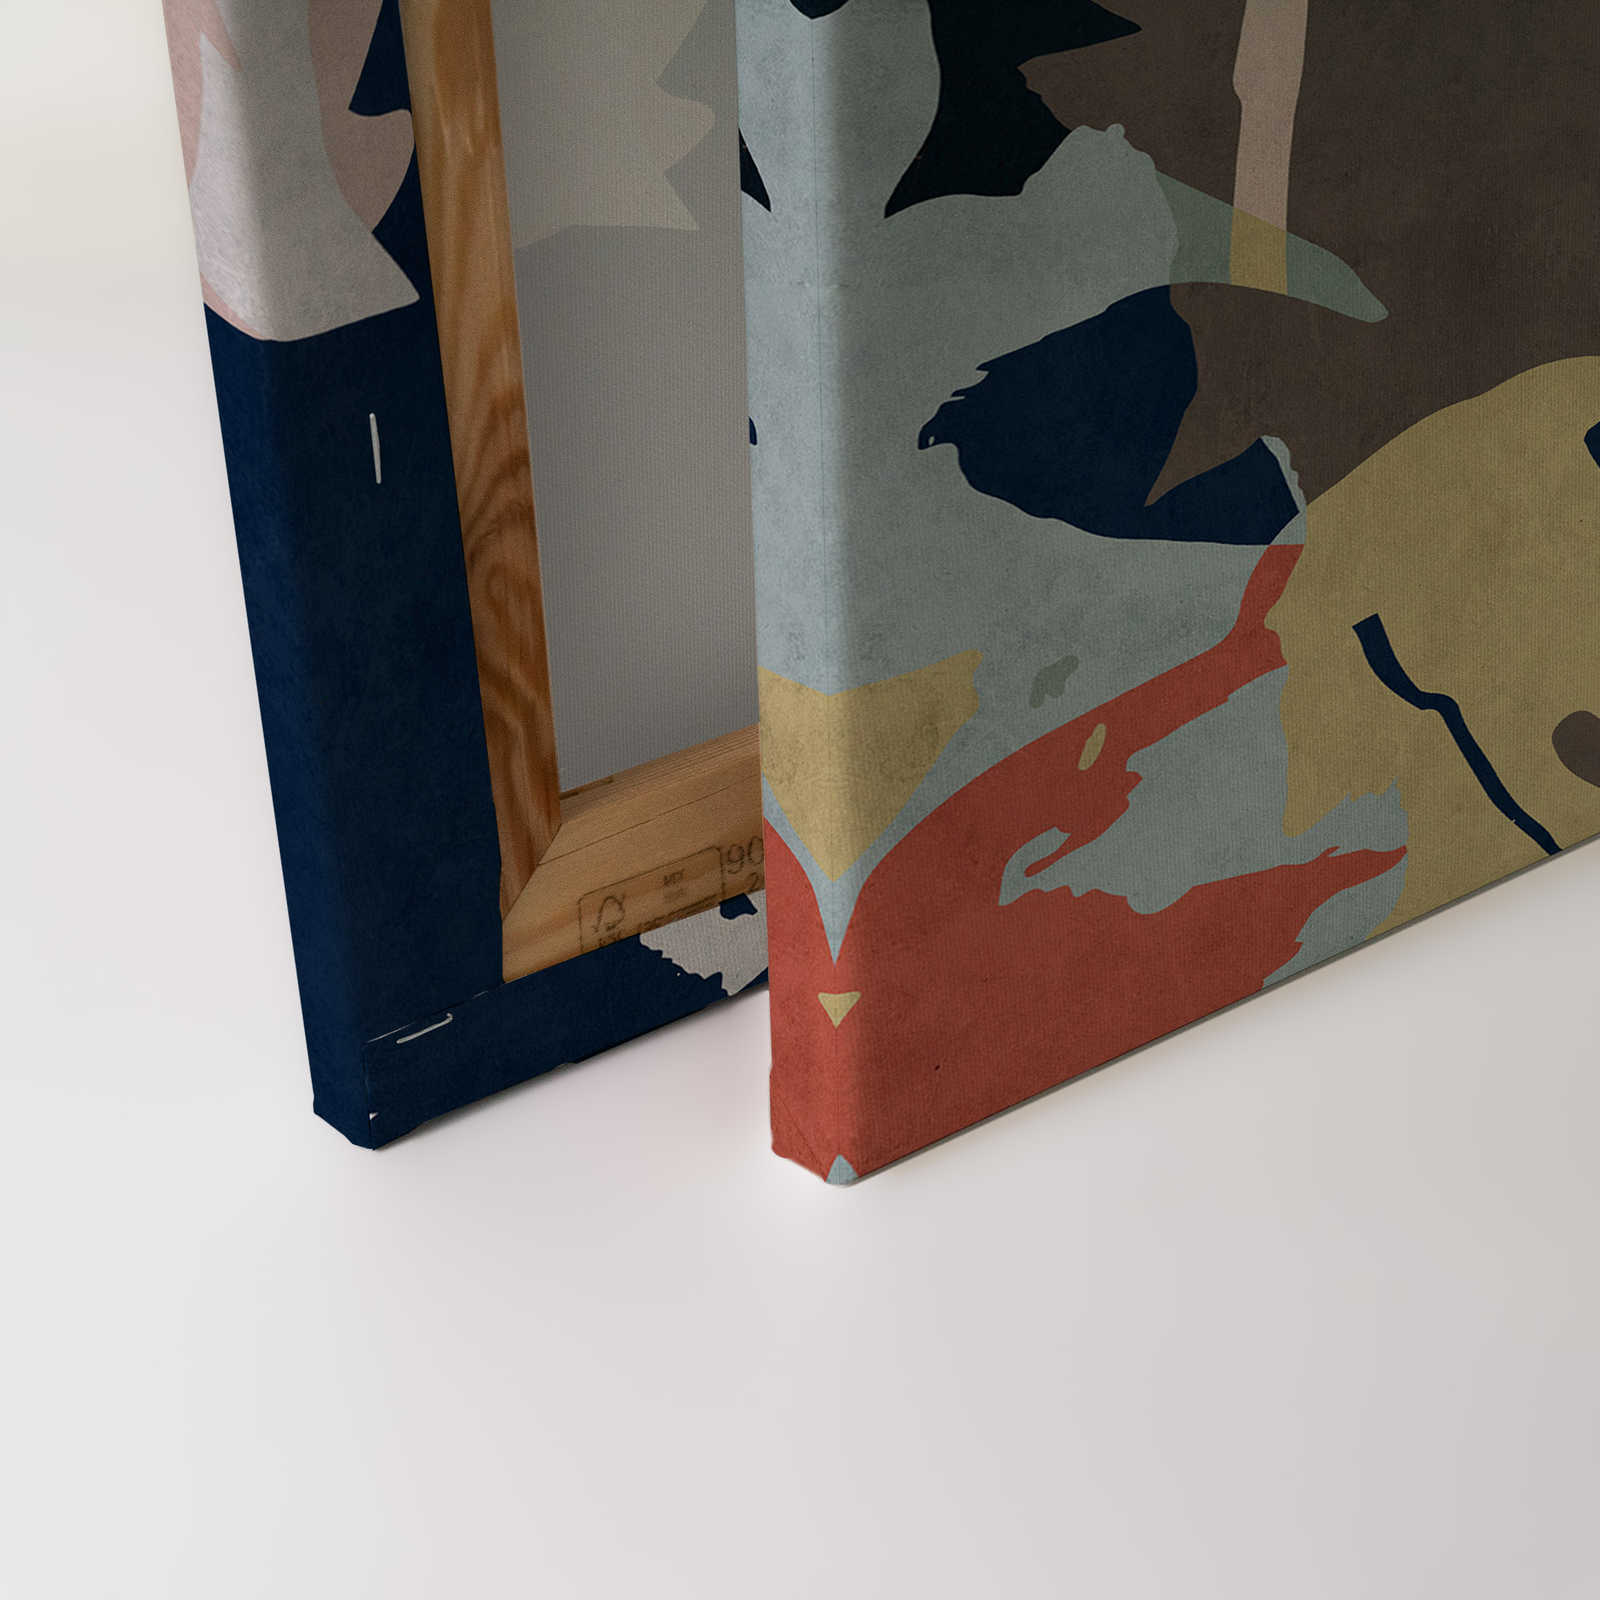             Bloemrijkcollage 4 - Canvas schilderij met kleurrijk bladmotief - vloeipapier structuur - 0.90 m x 0.60 m
        